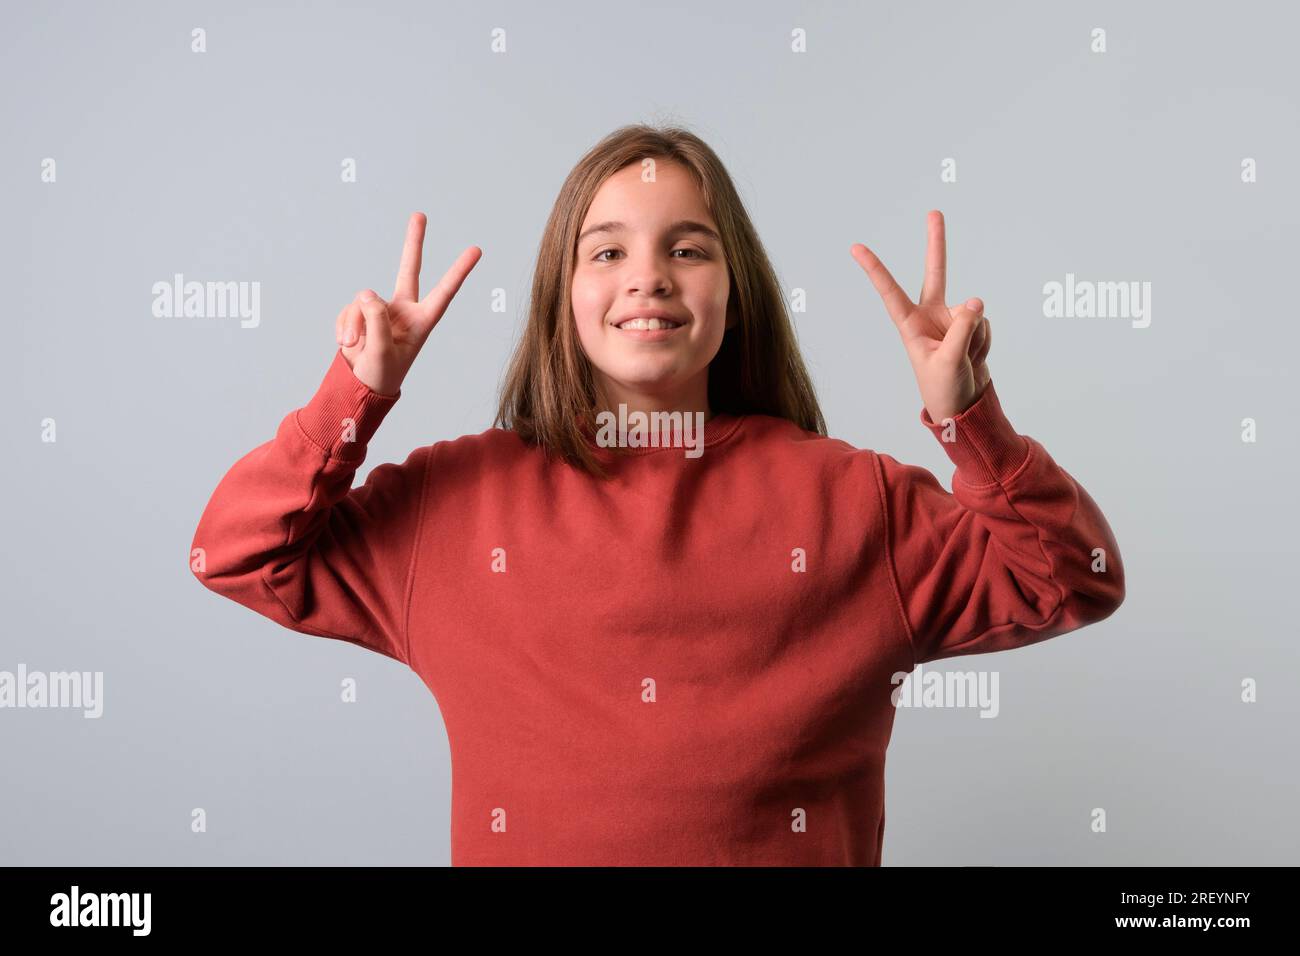 Porträt eines Teenagers, ein Zeichen des Sieges mit den Fingern. Roter Pullover, grauer Hintergrund Stockfoto